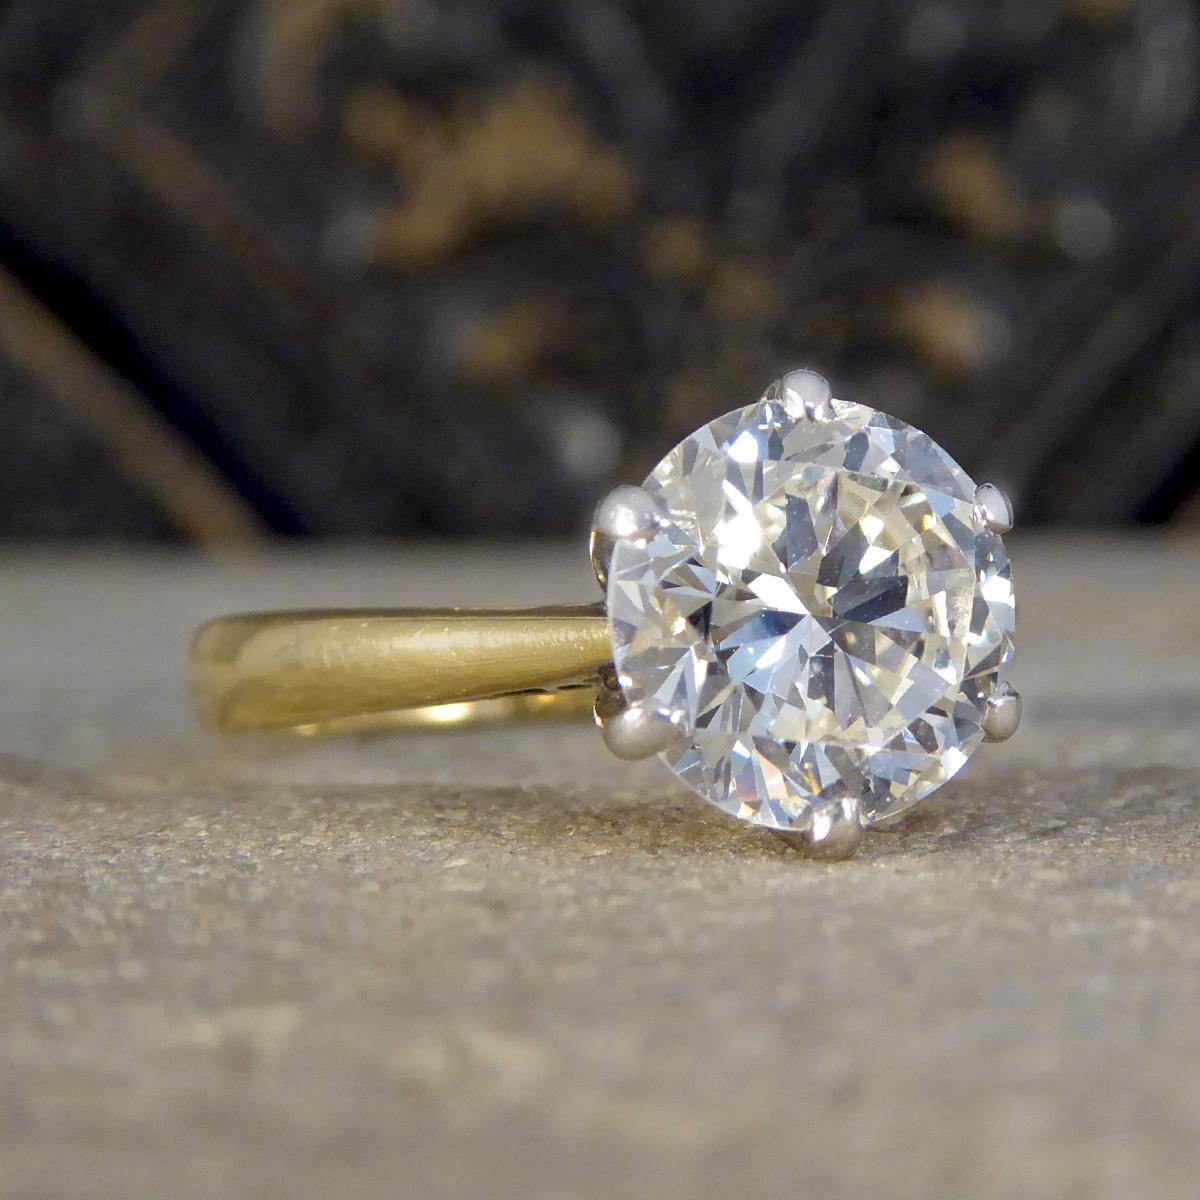 Cette exquise bague solitaire de 1,91 ct de diamant taillé en brillant est un chef-d'œuvre époustouflant, réalisé avec expertise dans un mélange harmonieux d'or jaune et d'or blanc de 18 ct. La pièce maîtresse, un éblouissant diamant de taille